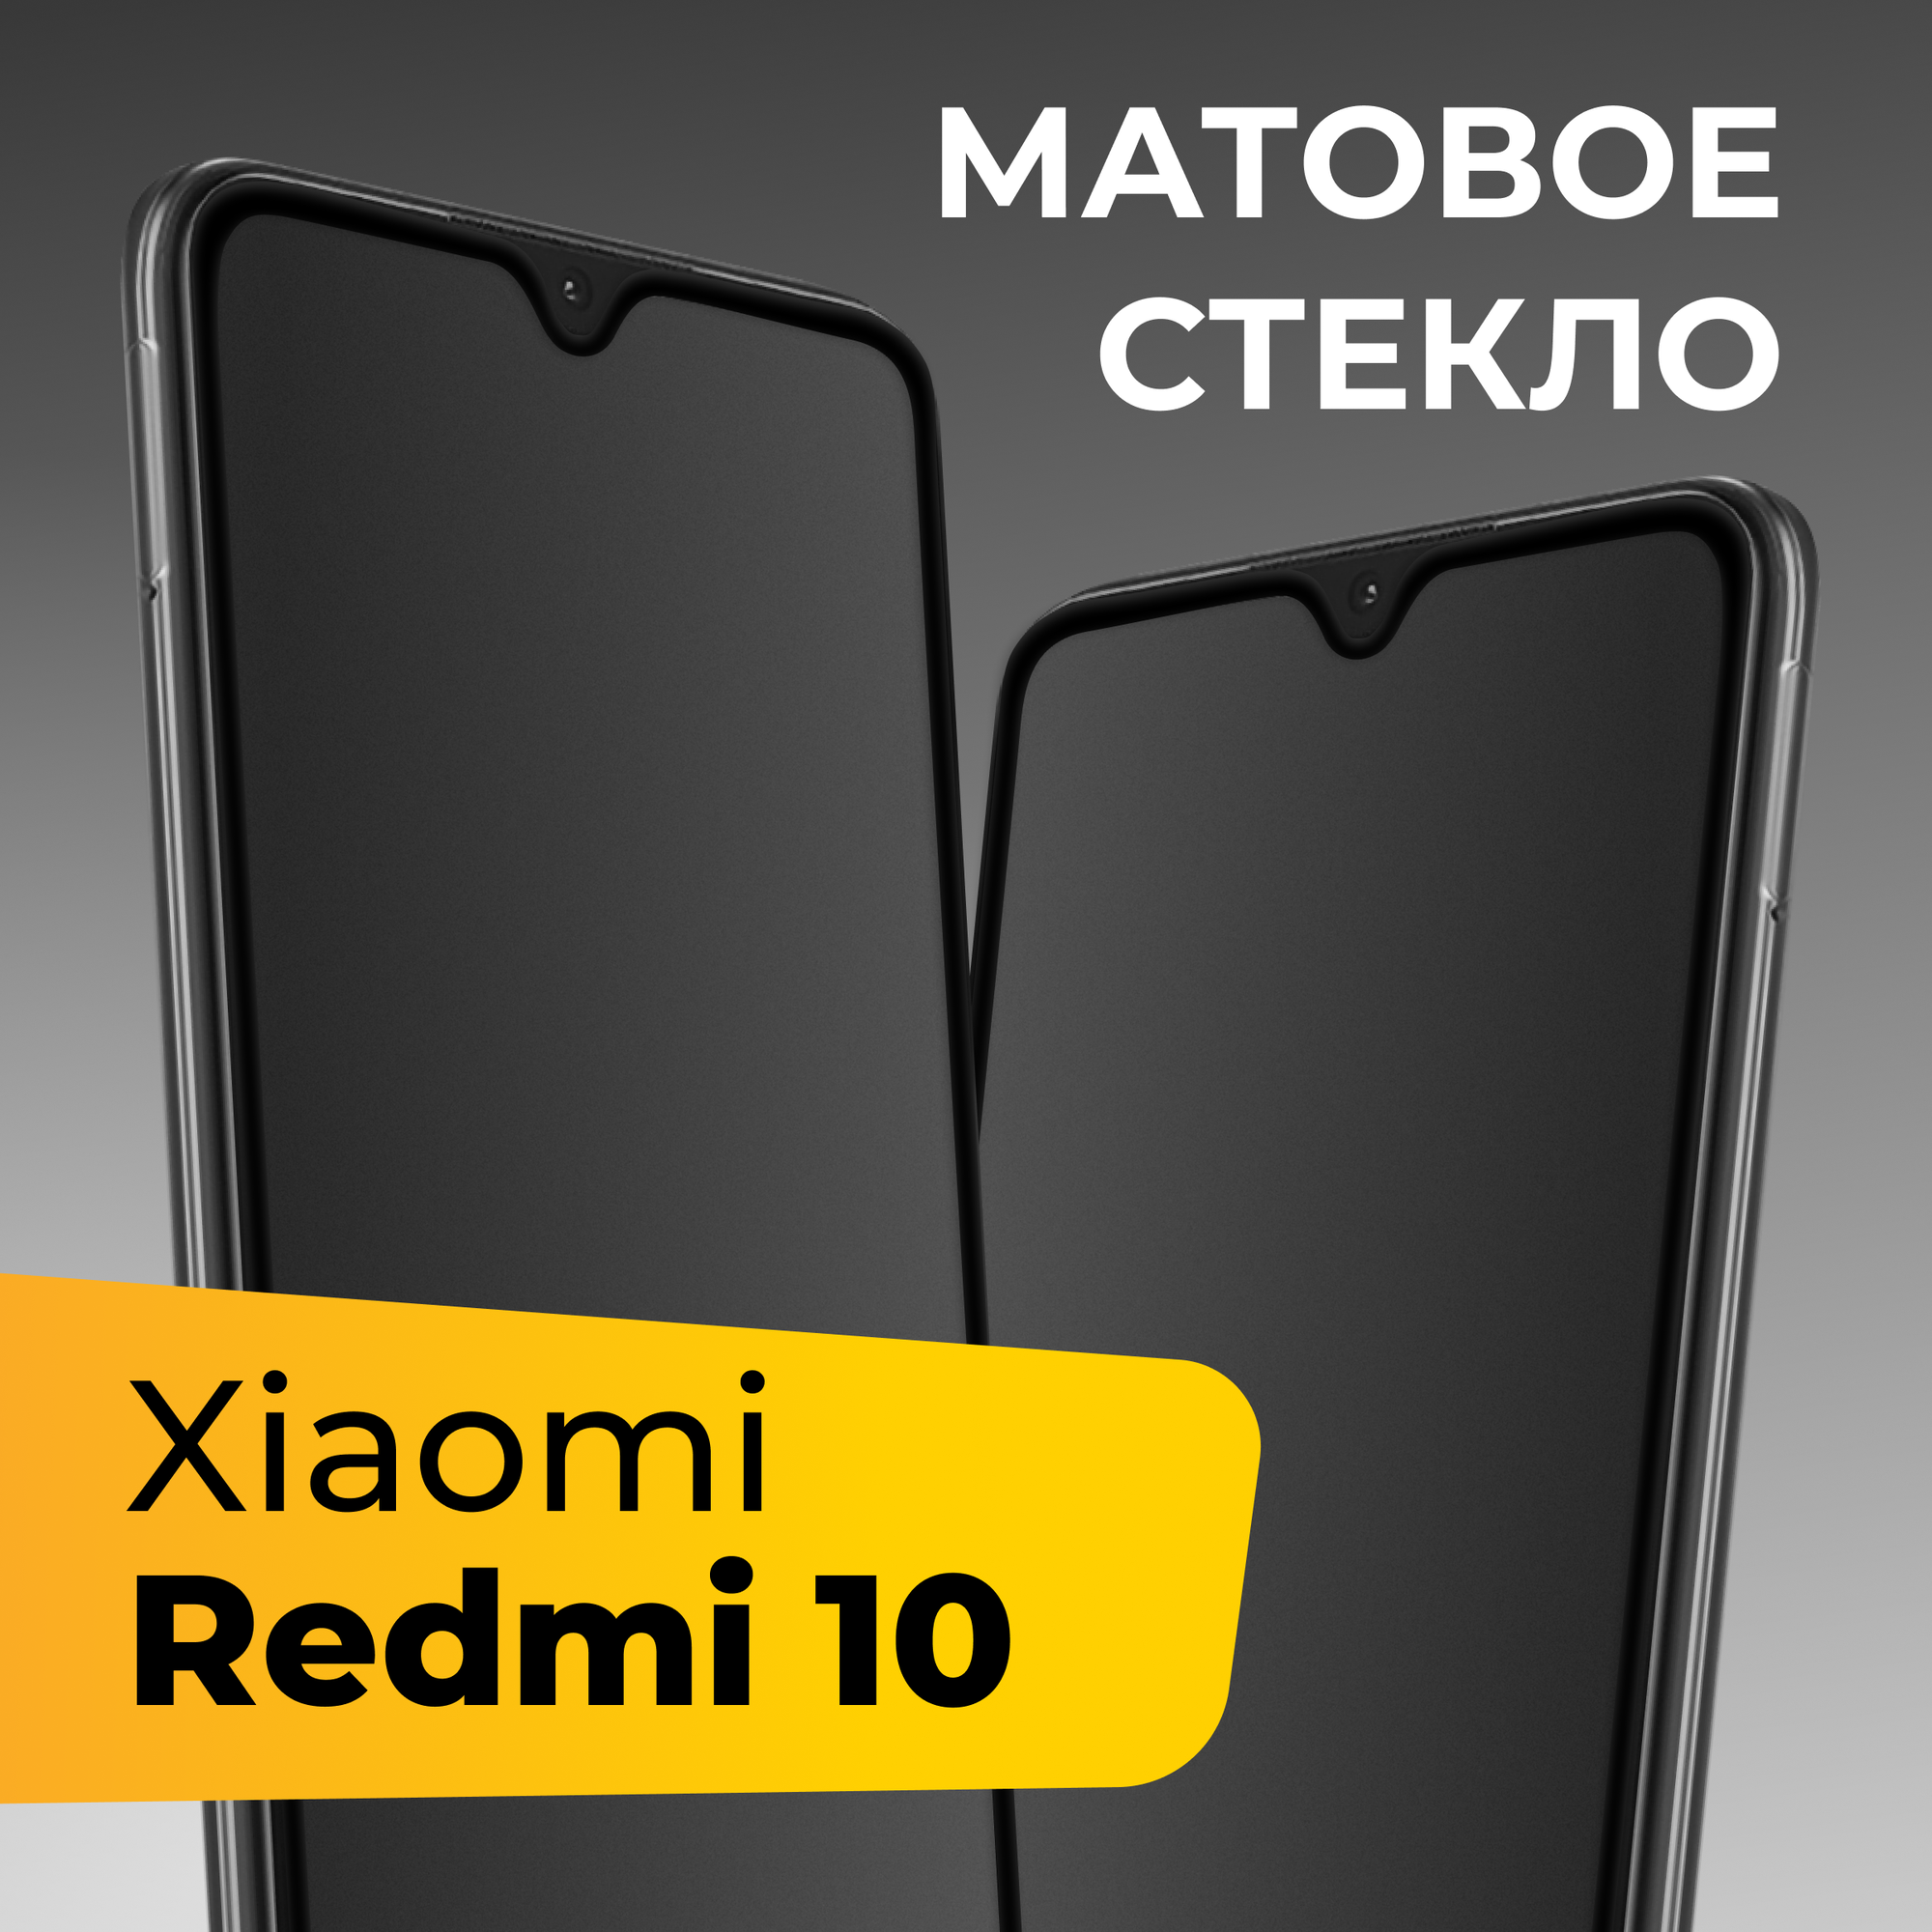 Матовое защитное стекло для телефона Xiaomi Redmi 10 / Противоударное закаленное стекло на весь экран для смартфона Сяоми Редми 10